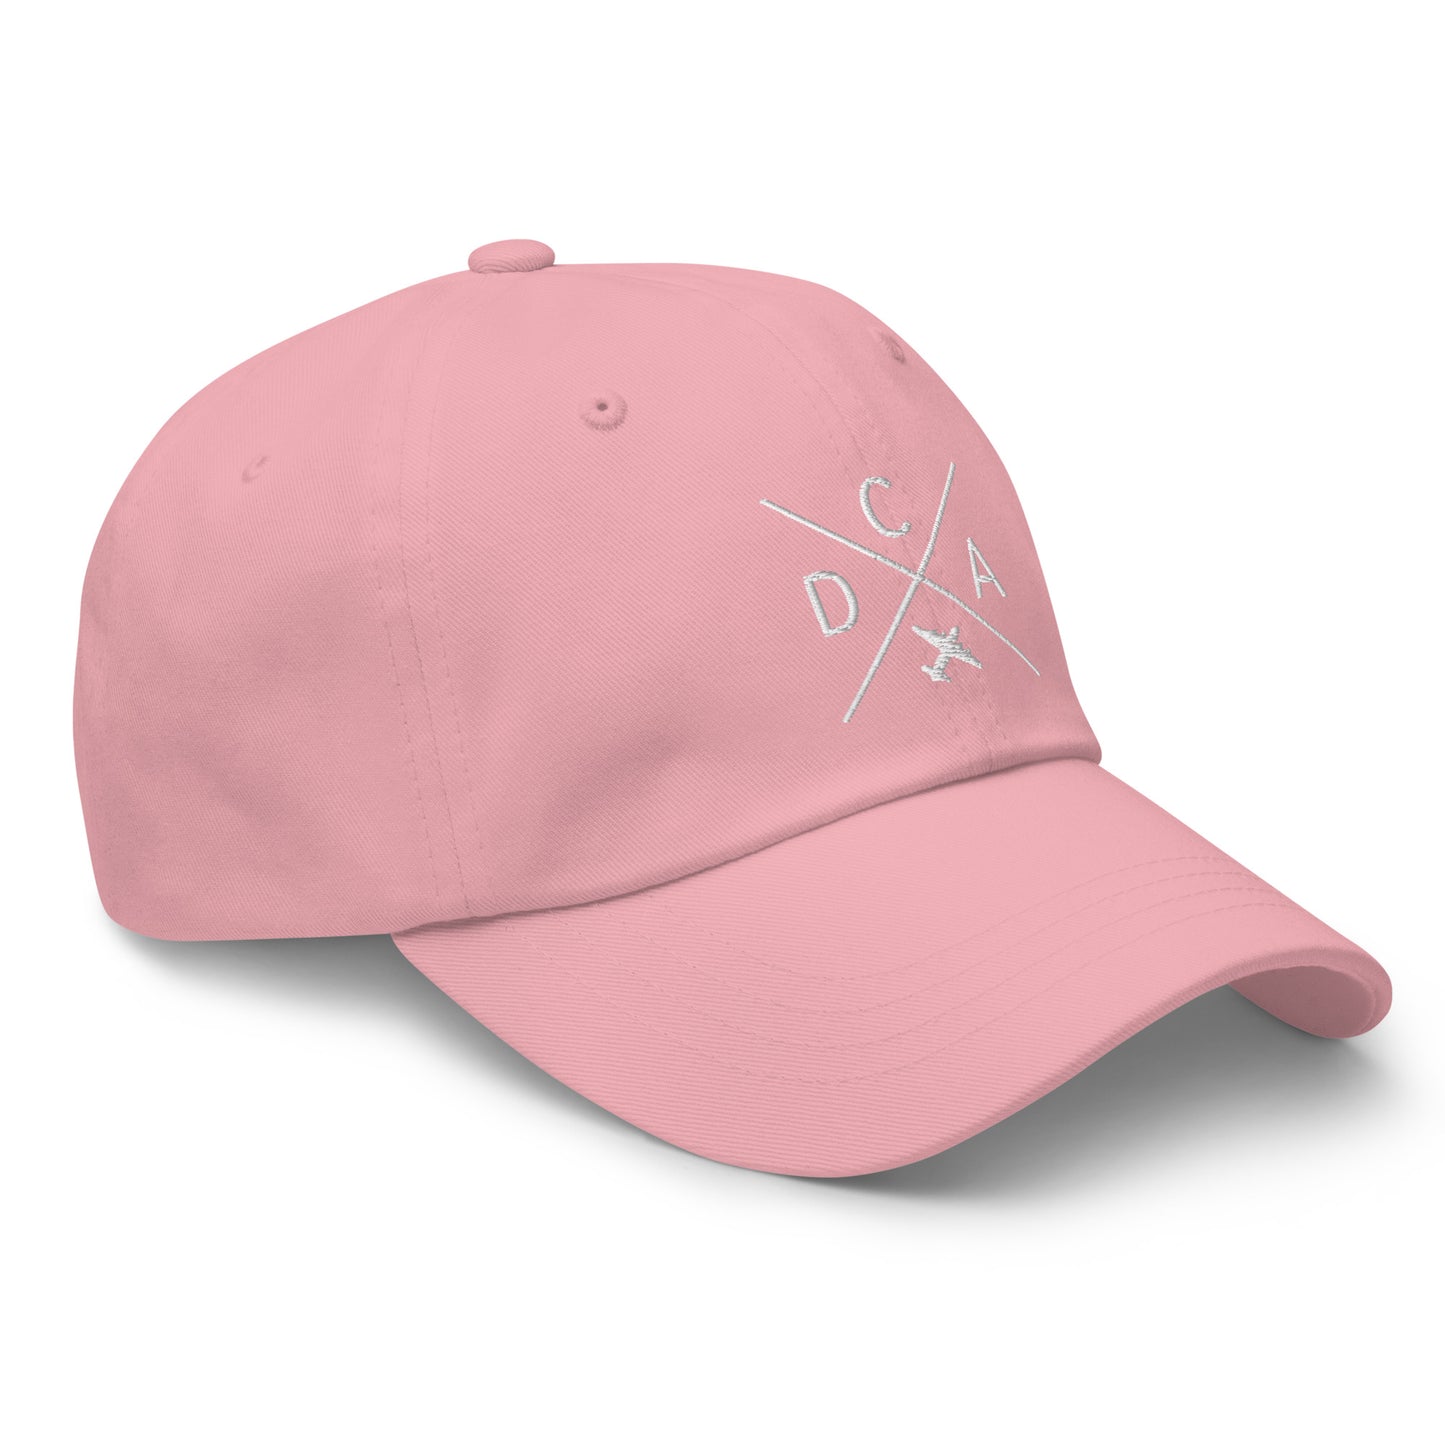 Crossed-X Dad Hat - White • DCA Washington • YHM Designs - Image 26